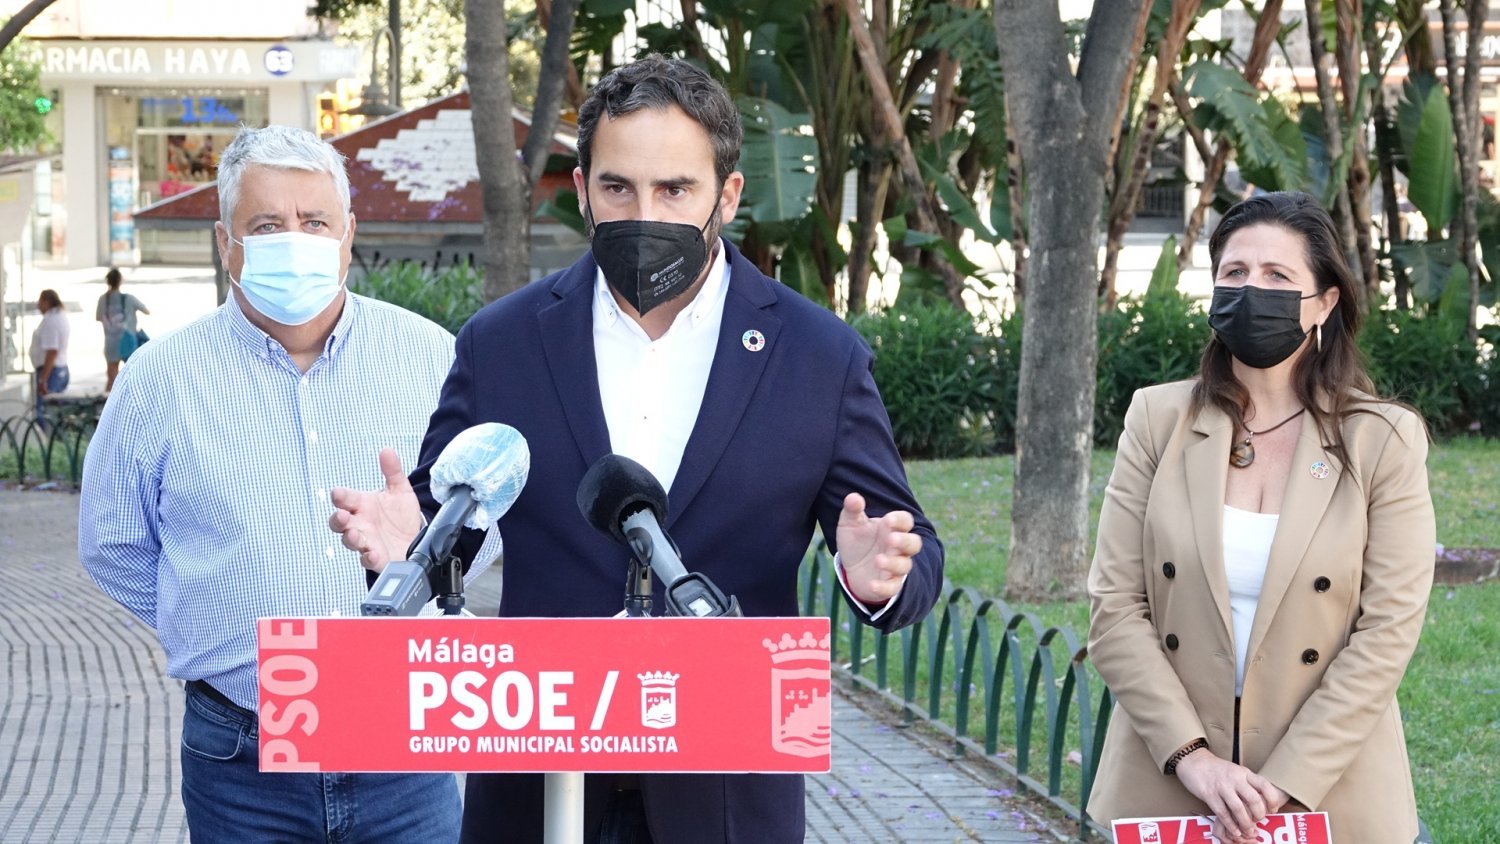 PSOE urge al Ayuntamiento a retirar los nombres franquistas del callejero de la ciudad de Málaga